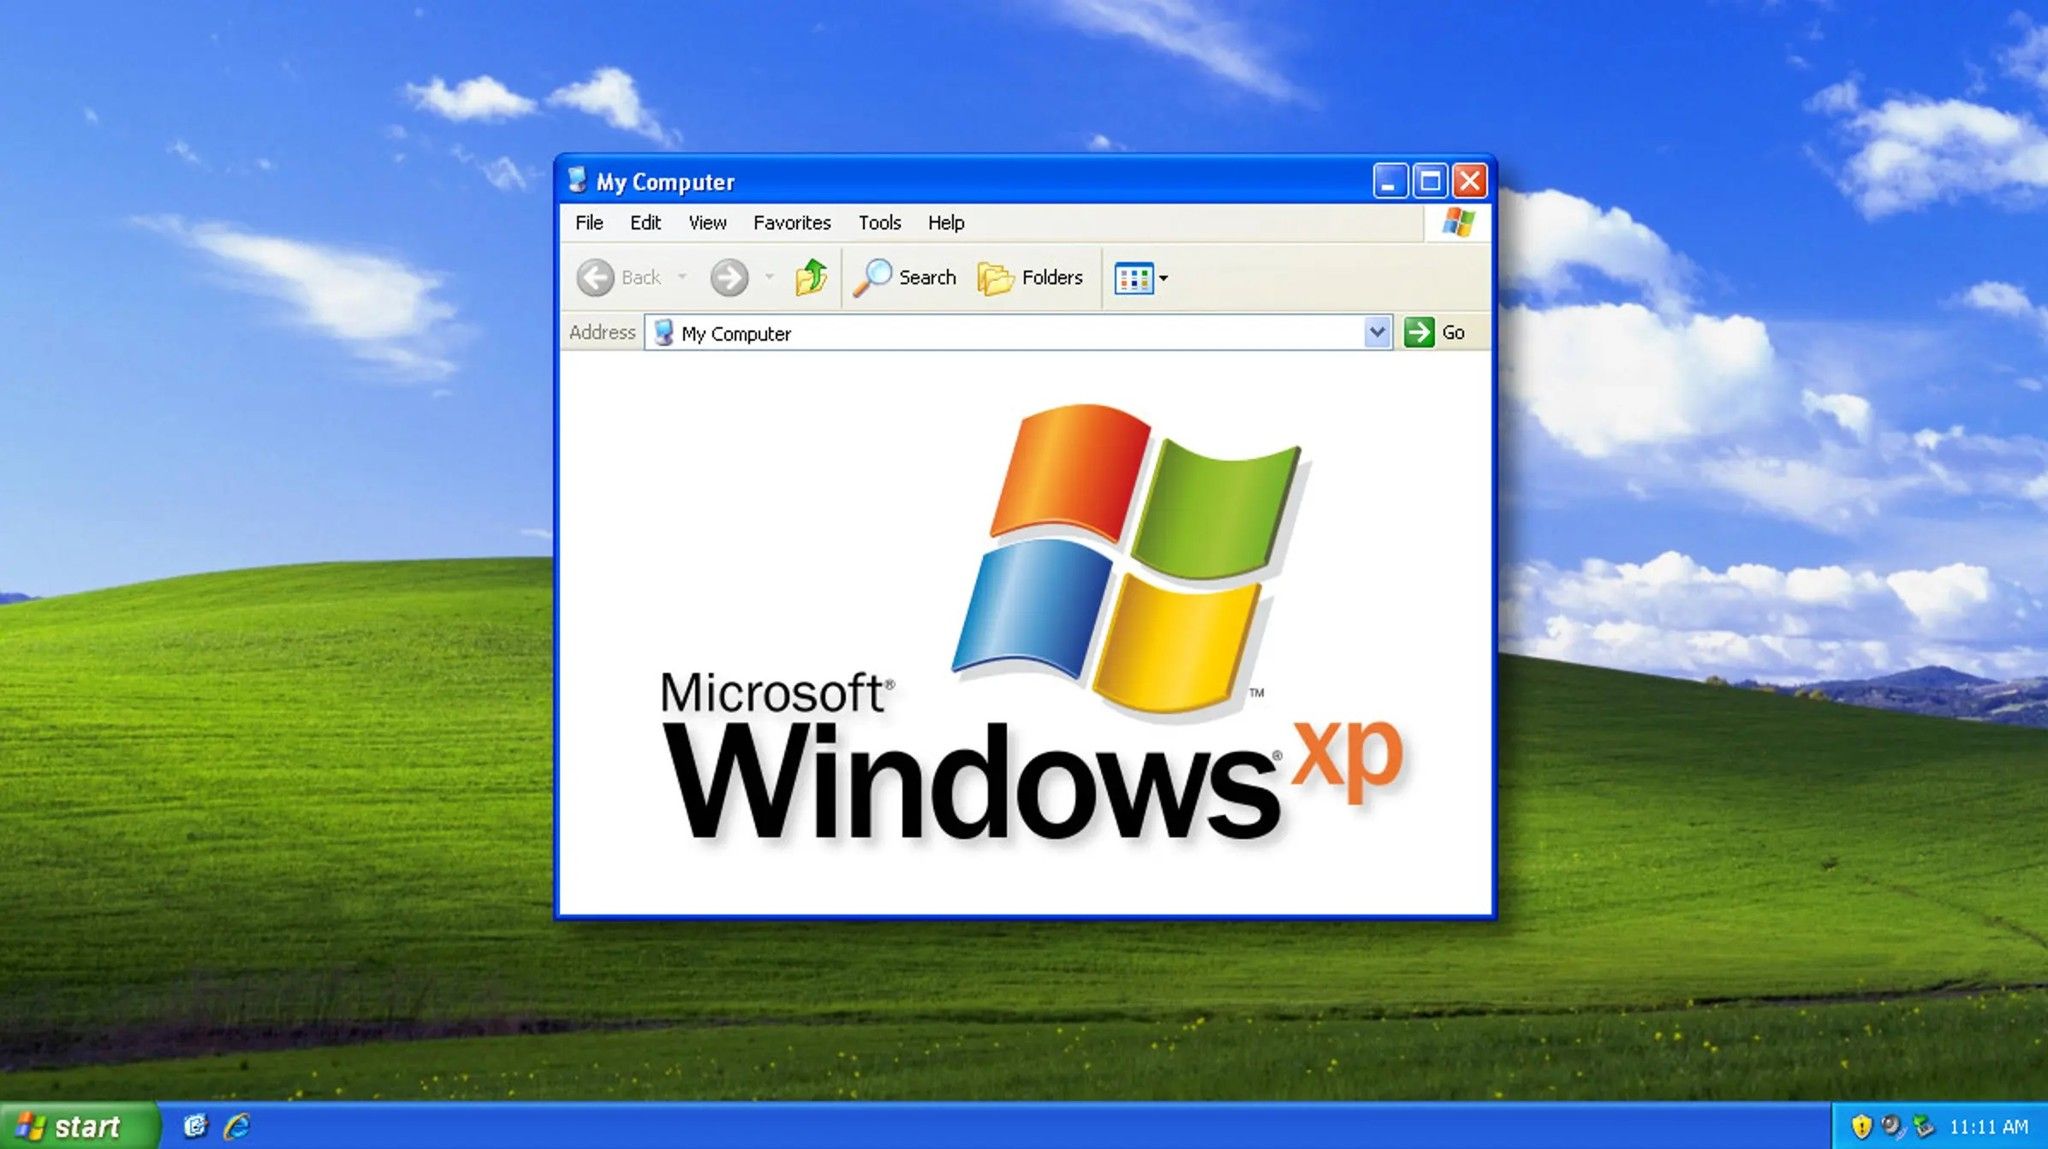 Hình nền Windows XP huyền thoại được tìm thấy trong game của Microsoft